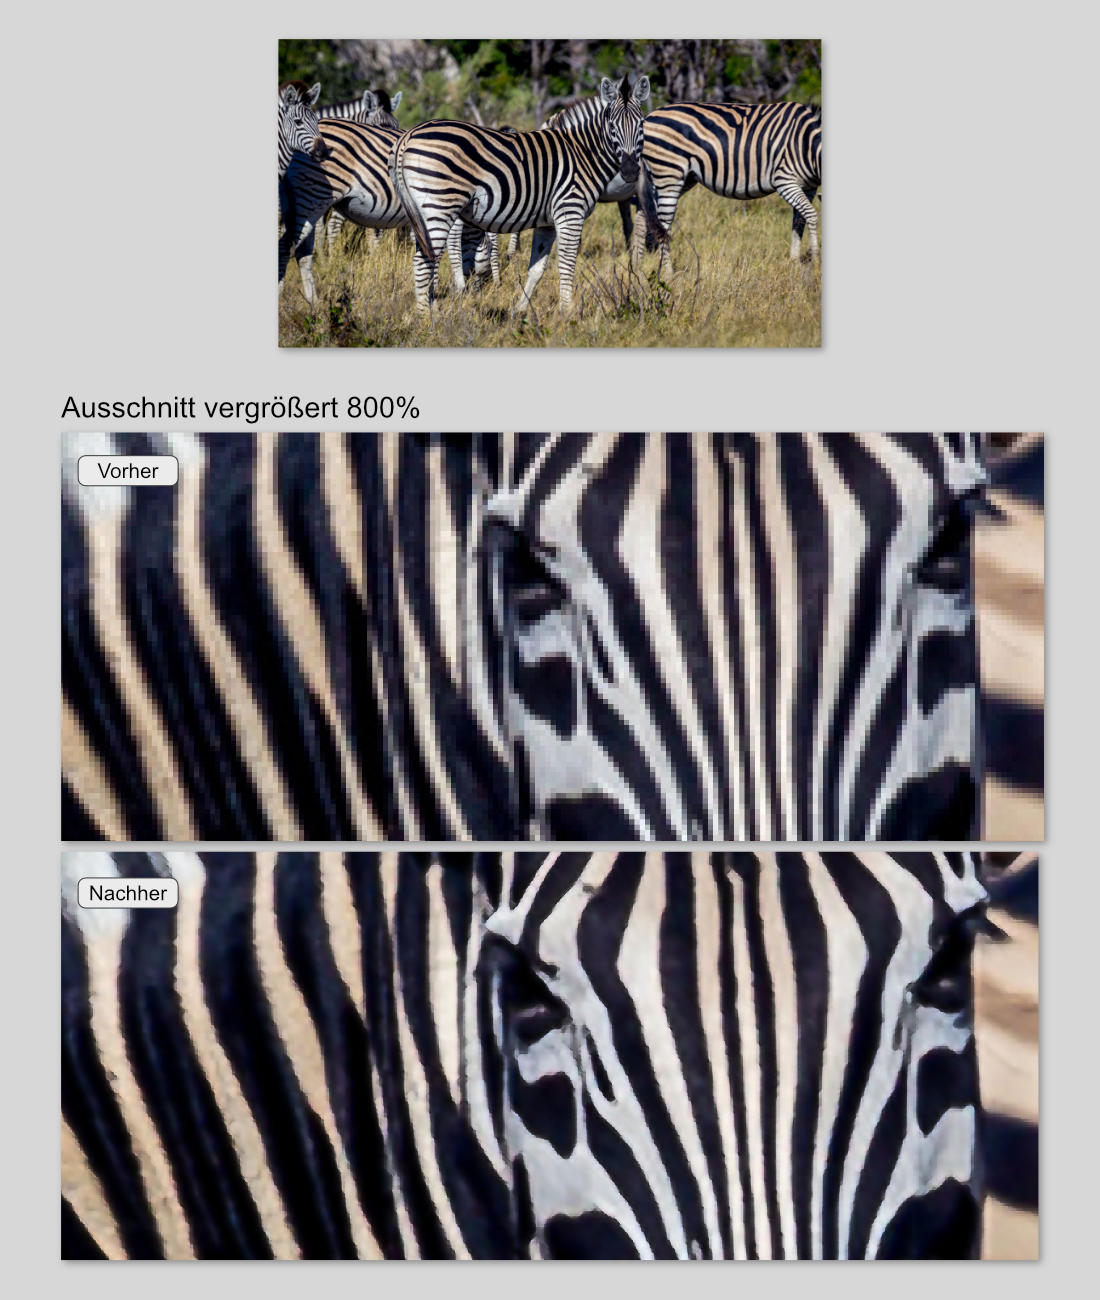 Beispielbild - Ausschnitssvergrößerung Augenbereich eines Zebras aus einem Gruppenbild von Zebras